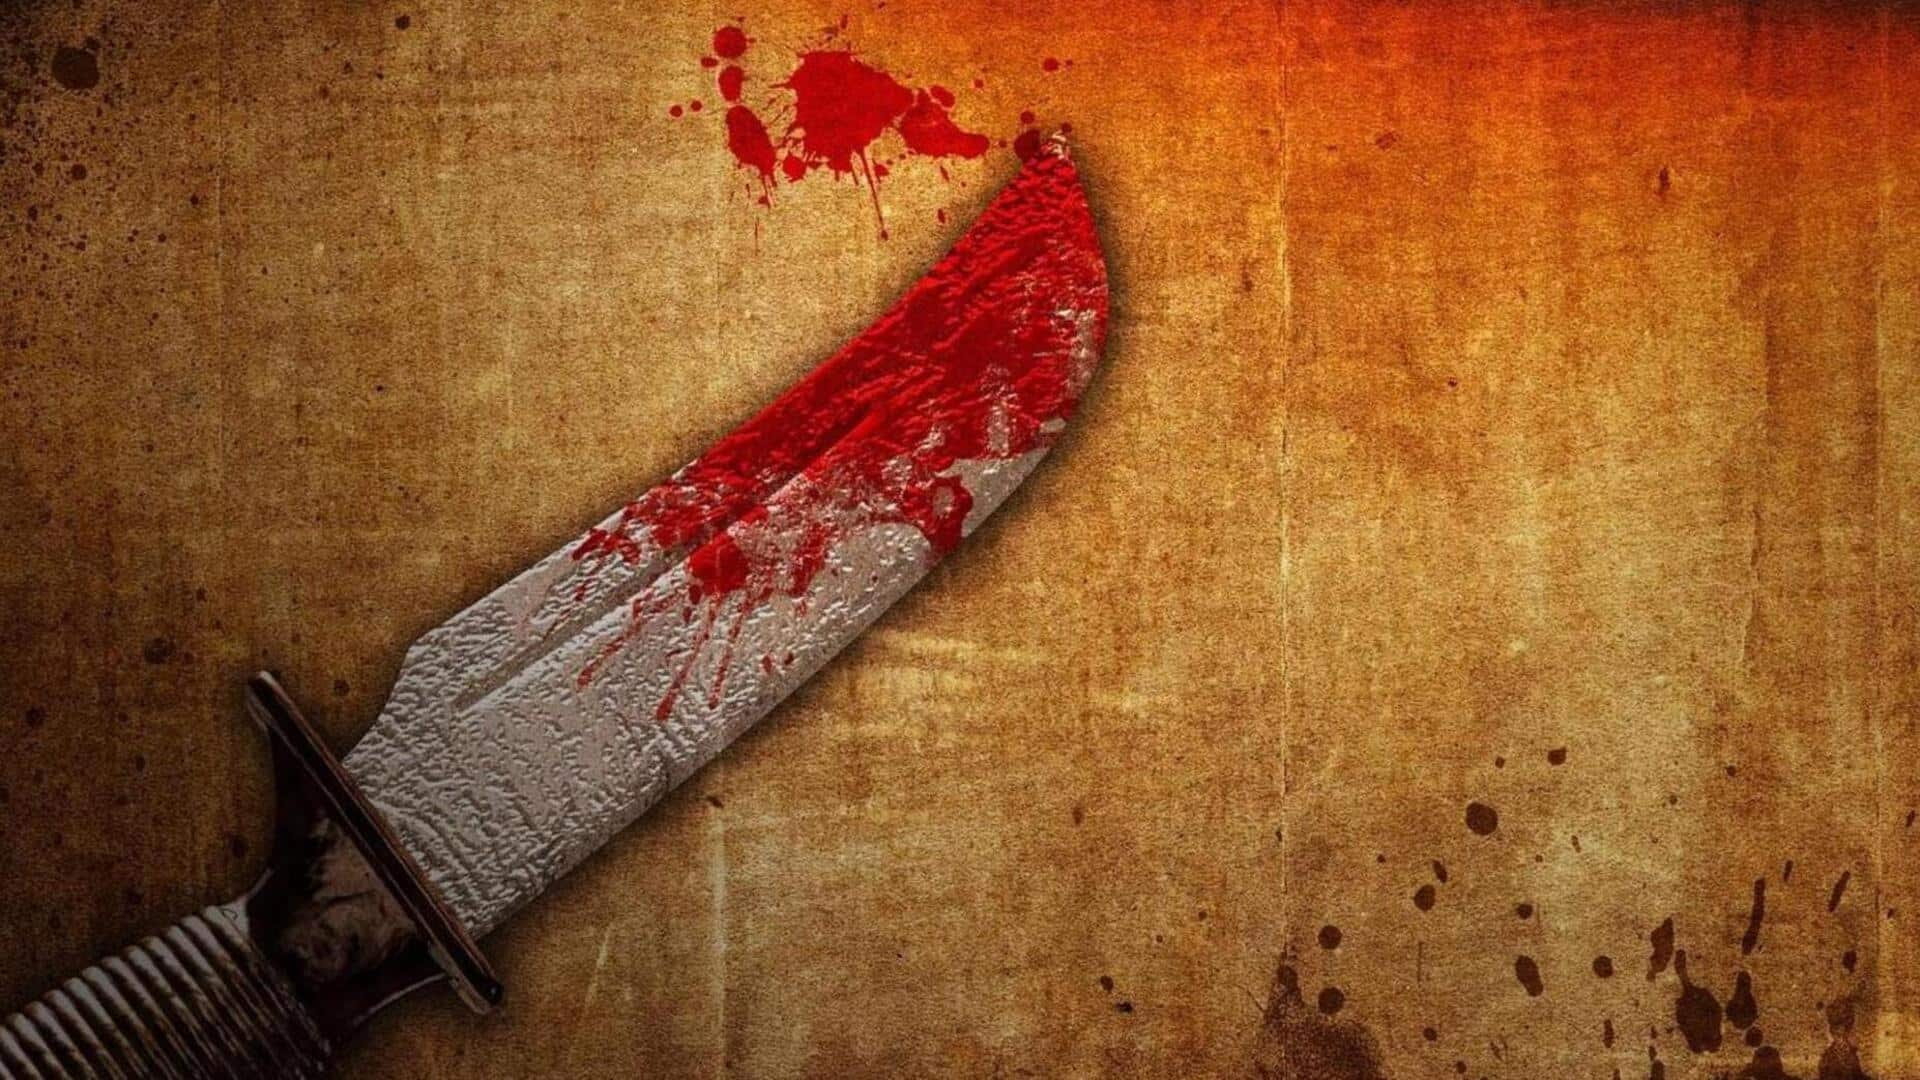 बिहार: जाम में फंसे युवक की दिनदहाड़े सीने में चाकू मारकर हत्या